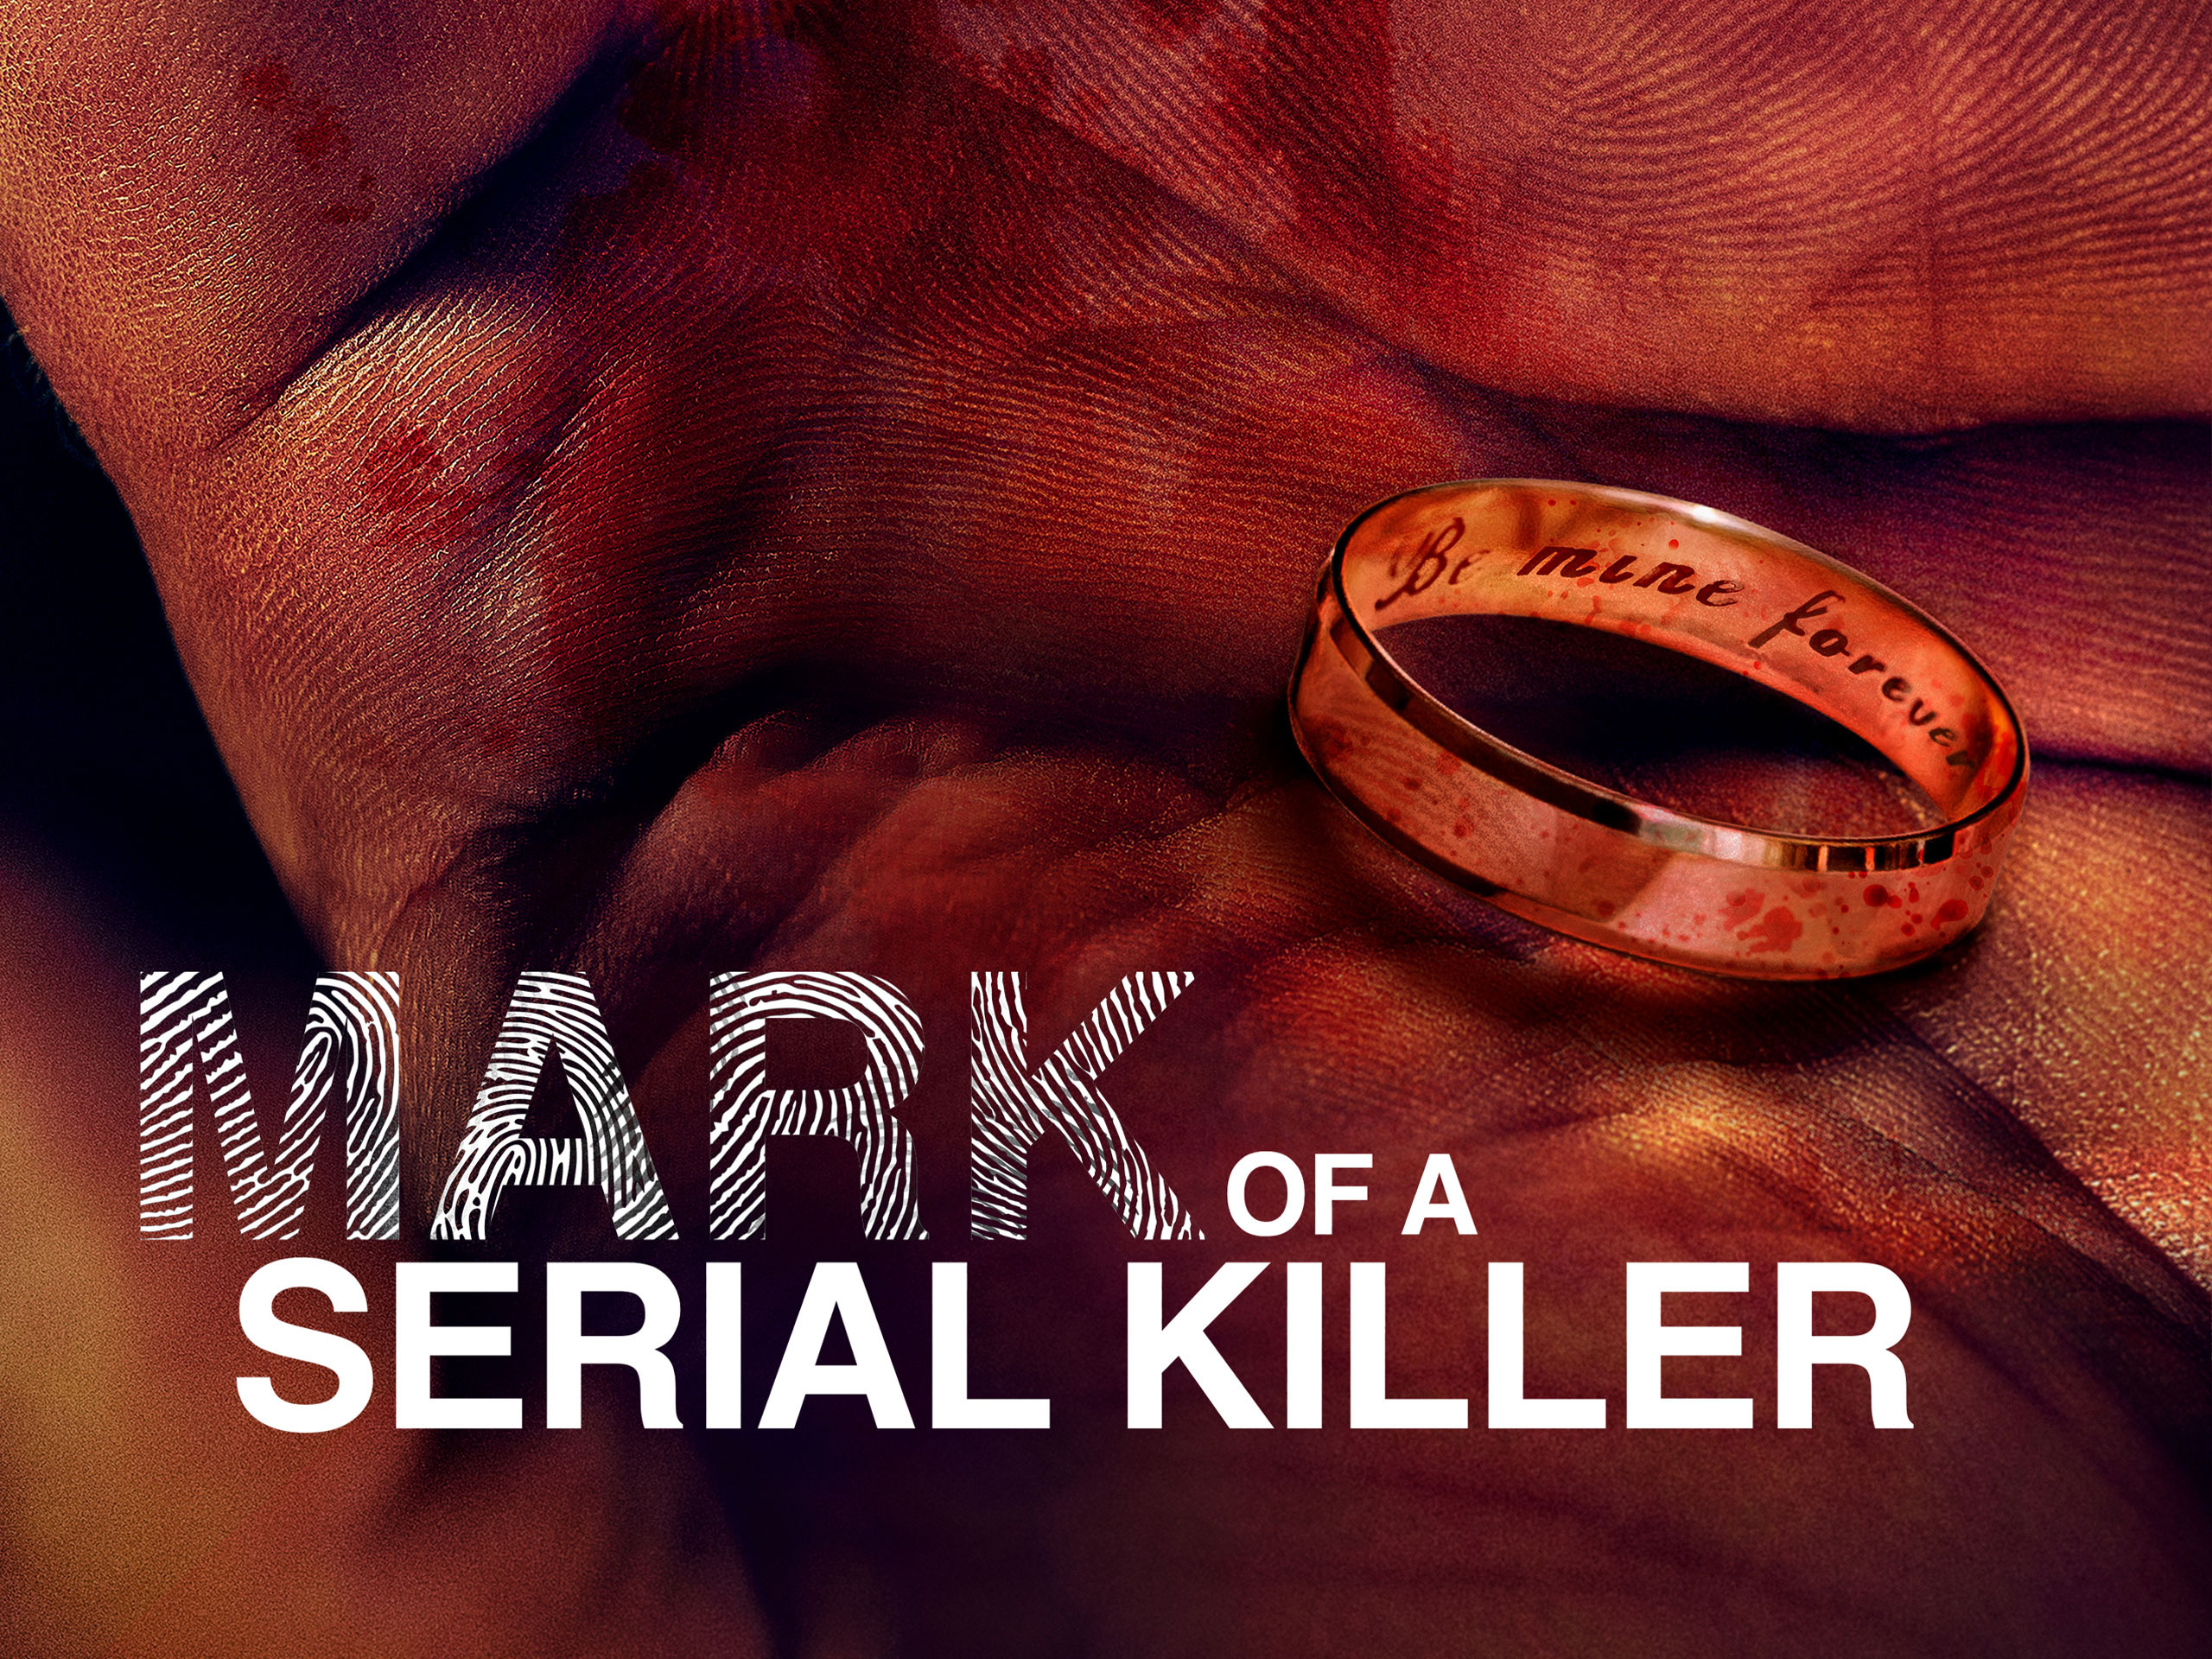 Mark of a Serial Killer